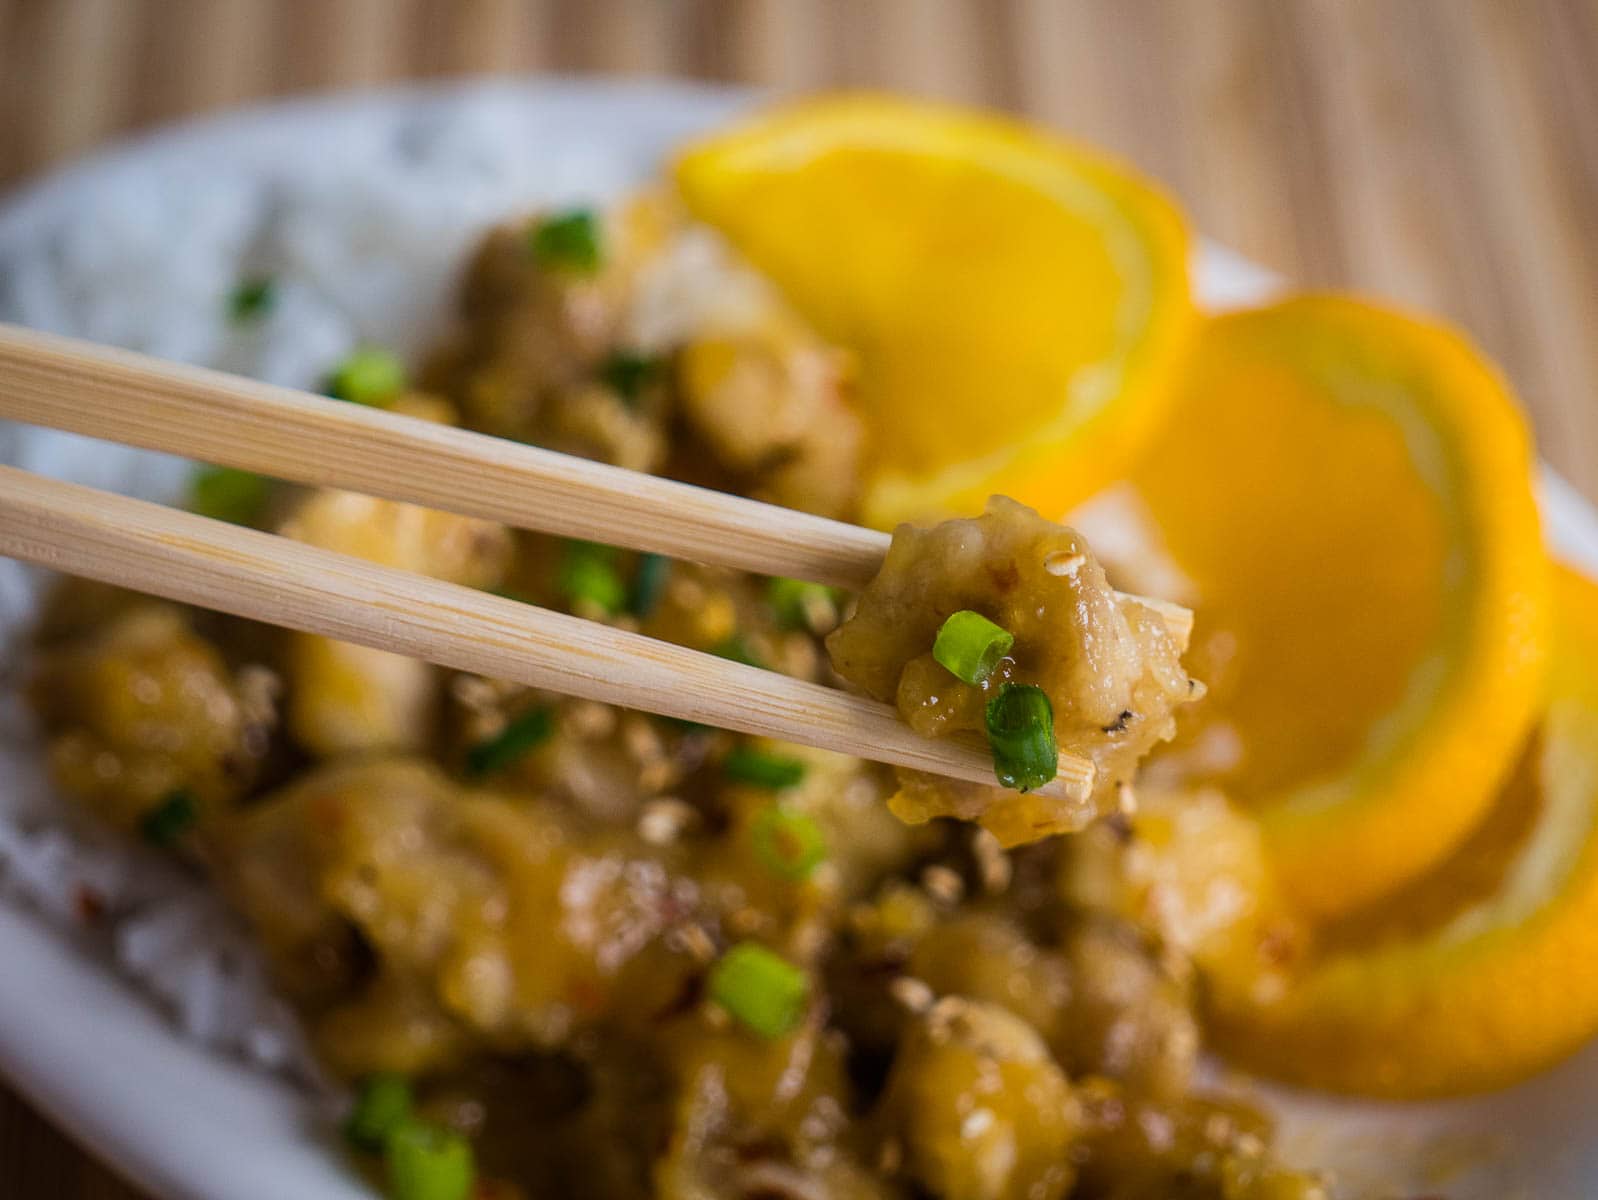 Orange chicken in chopsticks with chicken, rice and orange slices in the background.